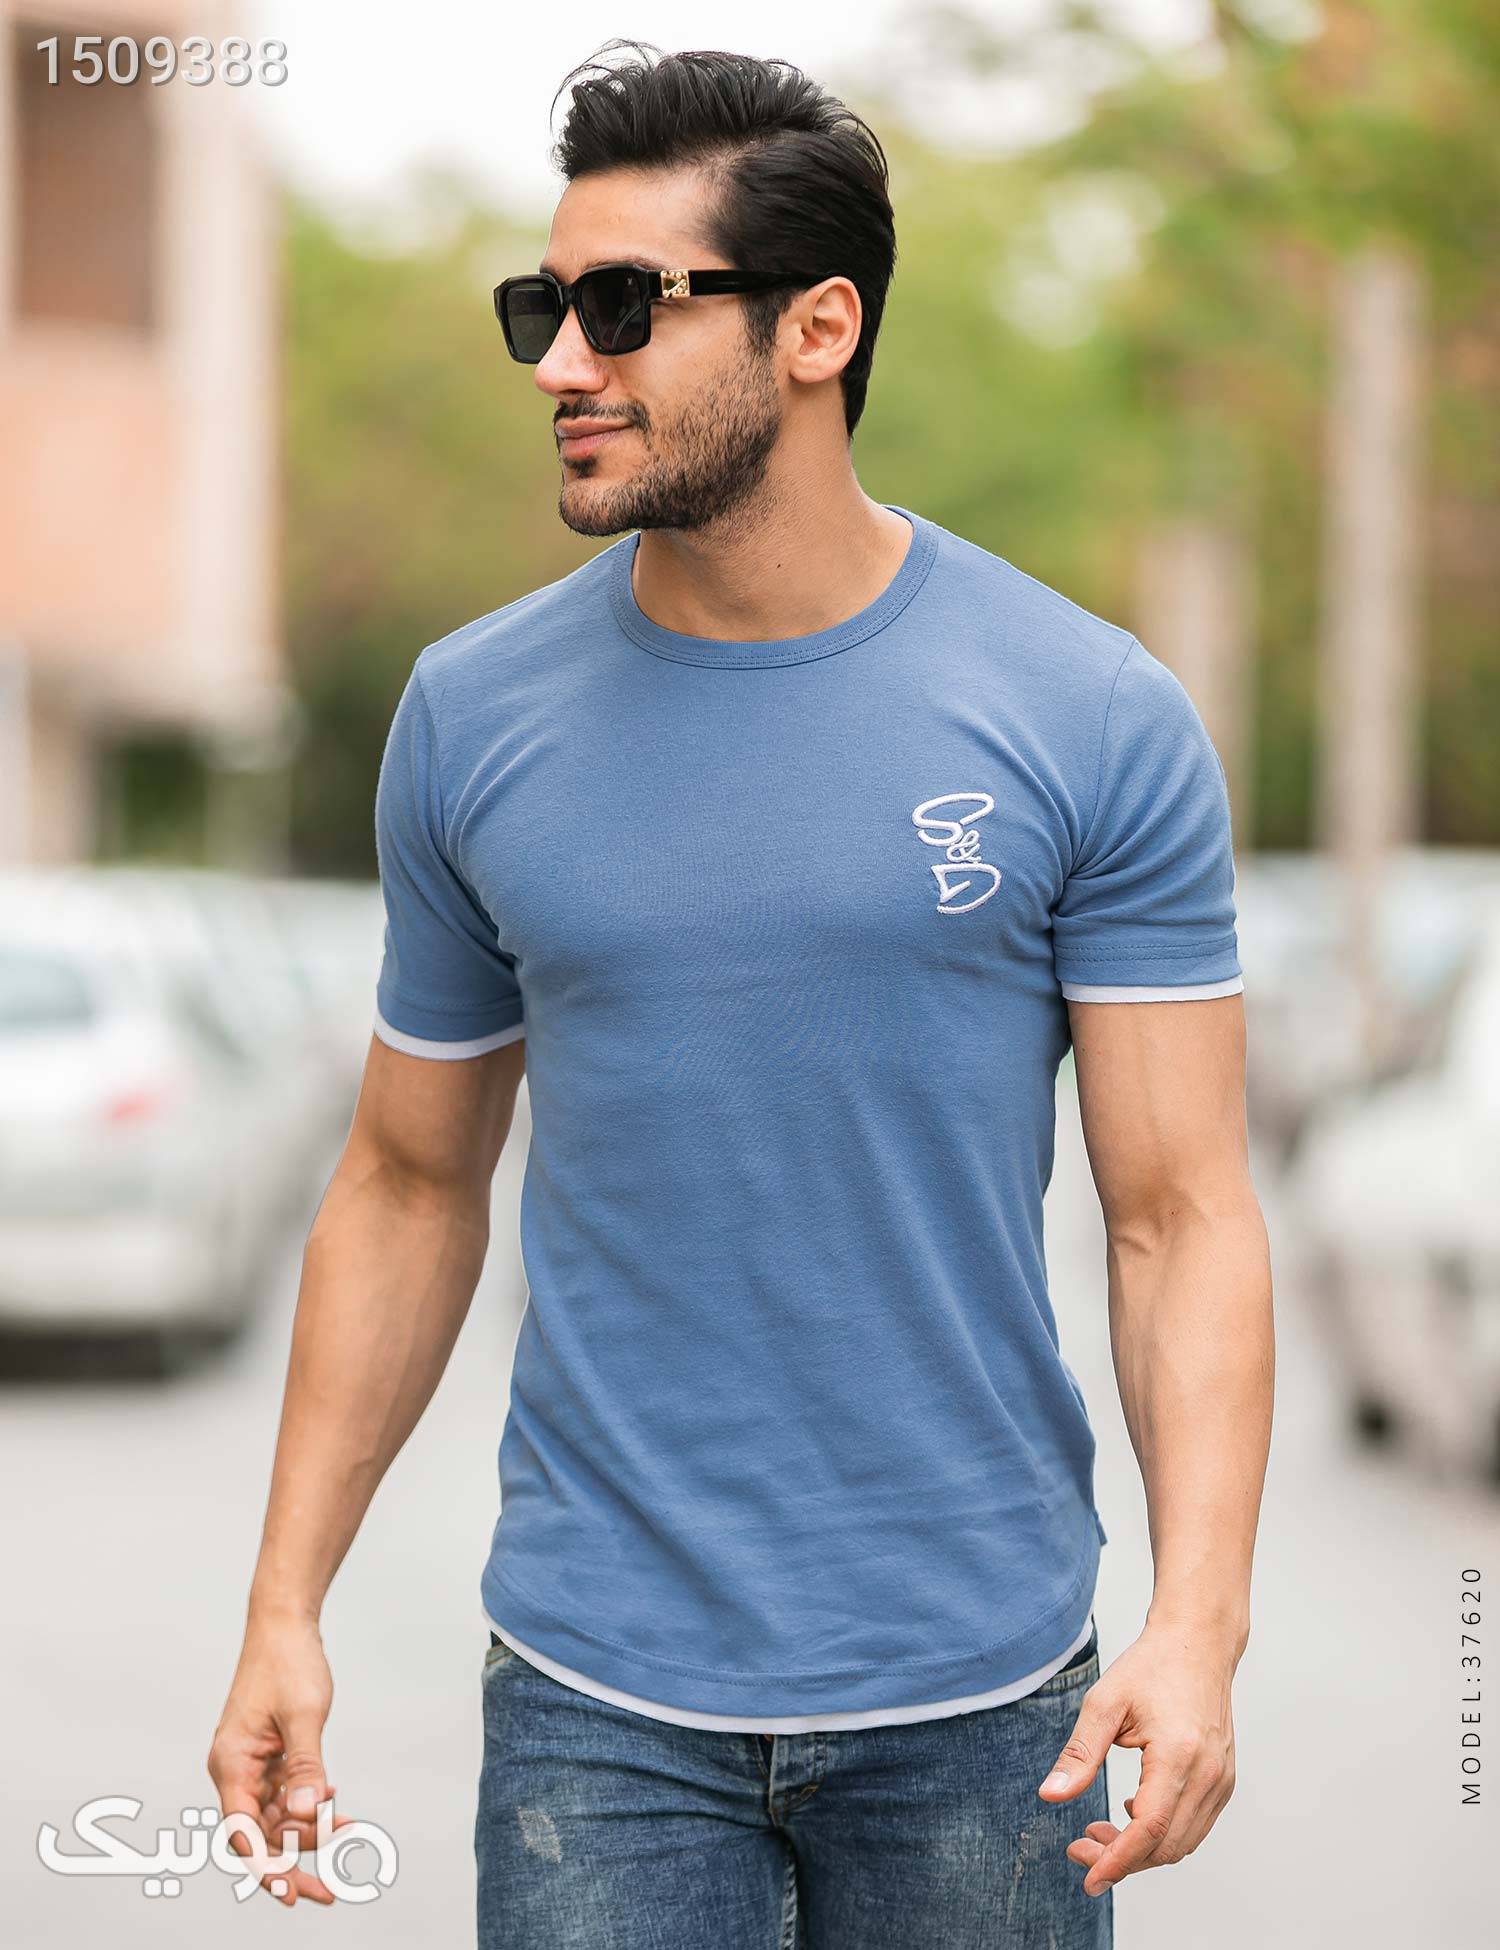 تیشرت مردانه DG مدل 37620 آبی تی شرت و پولو شرت مردانه